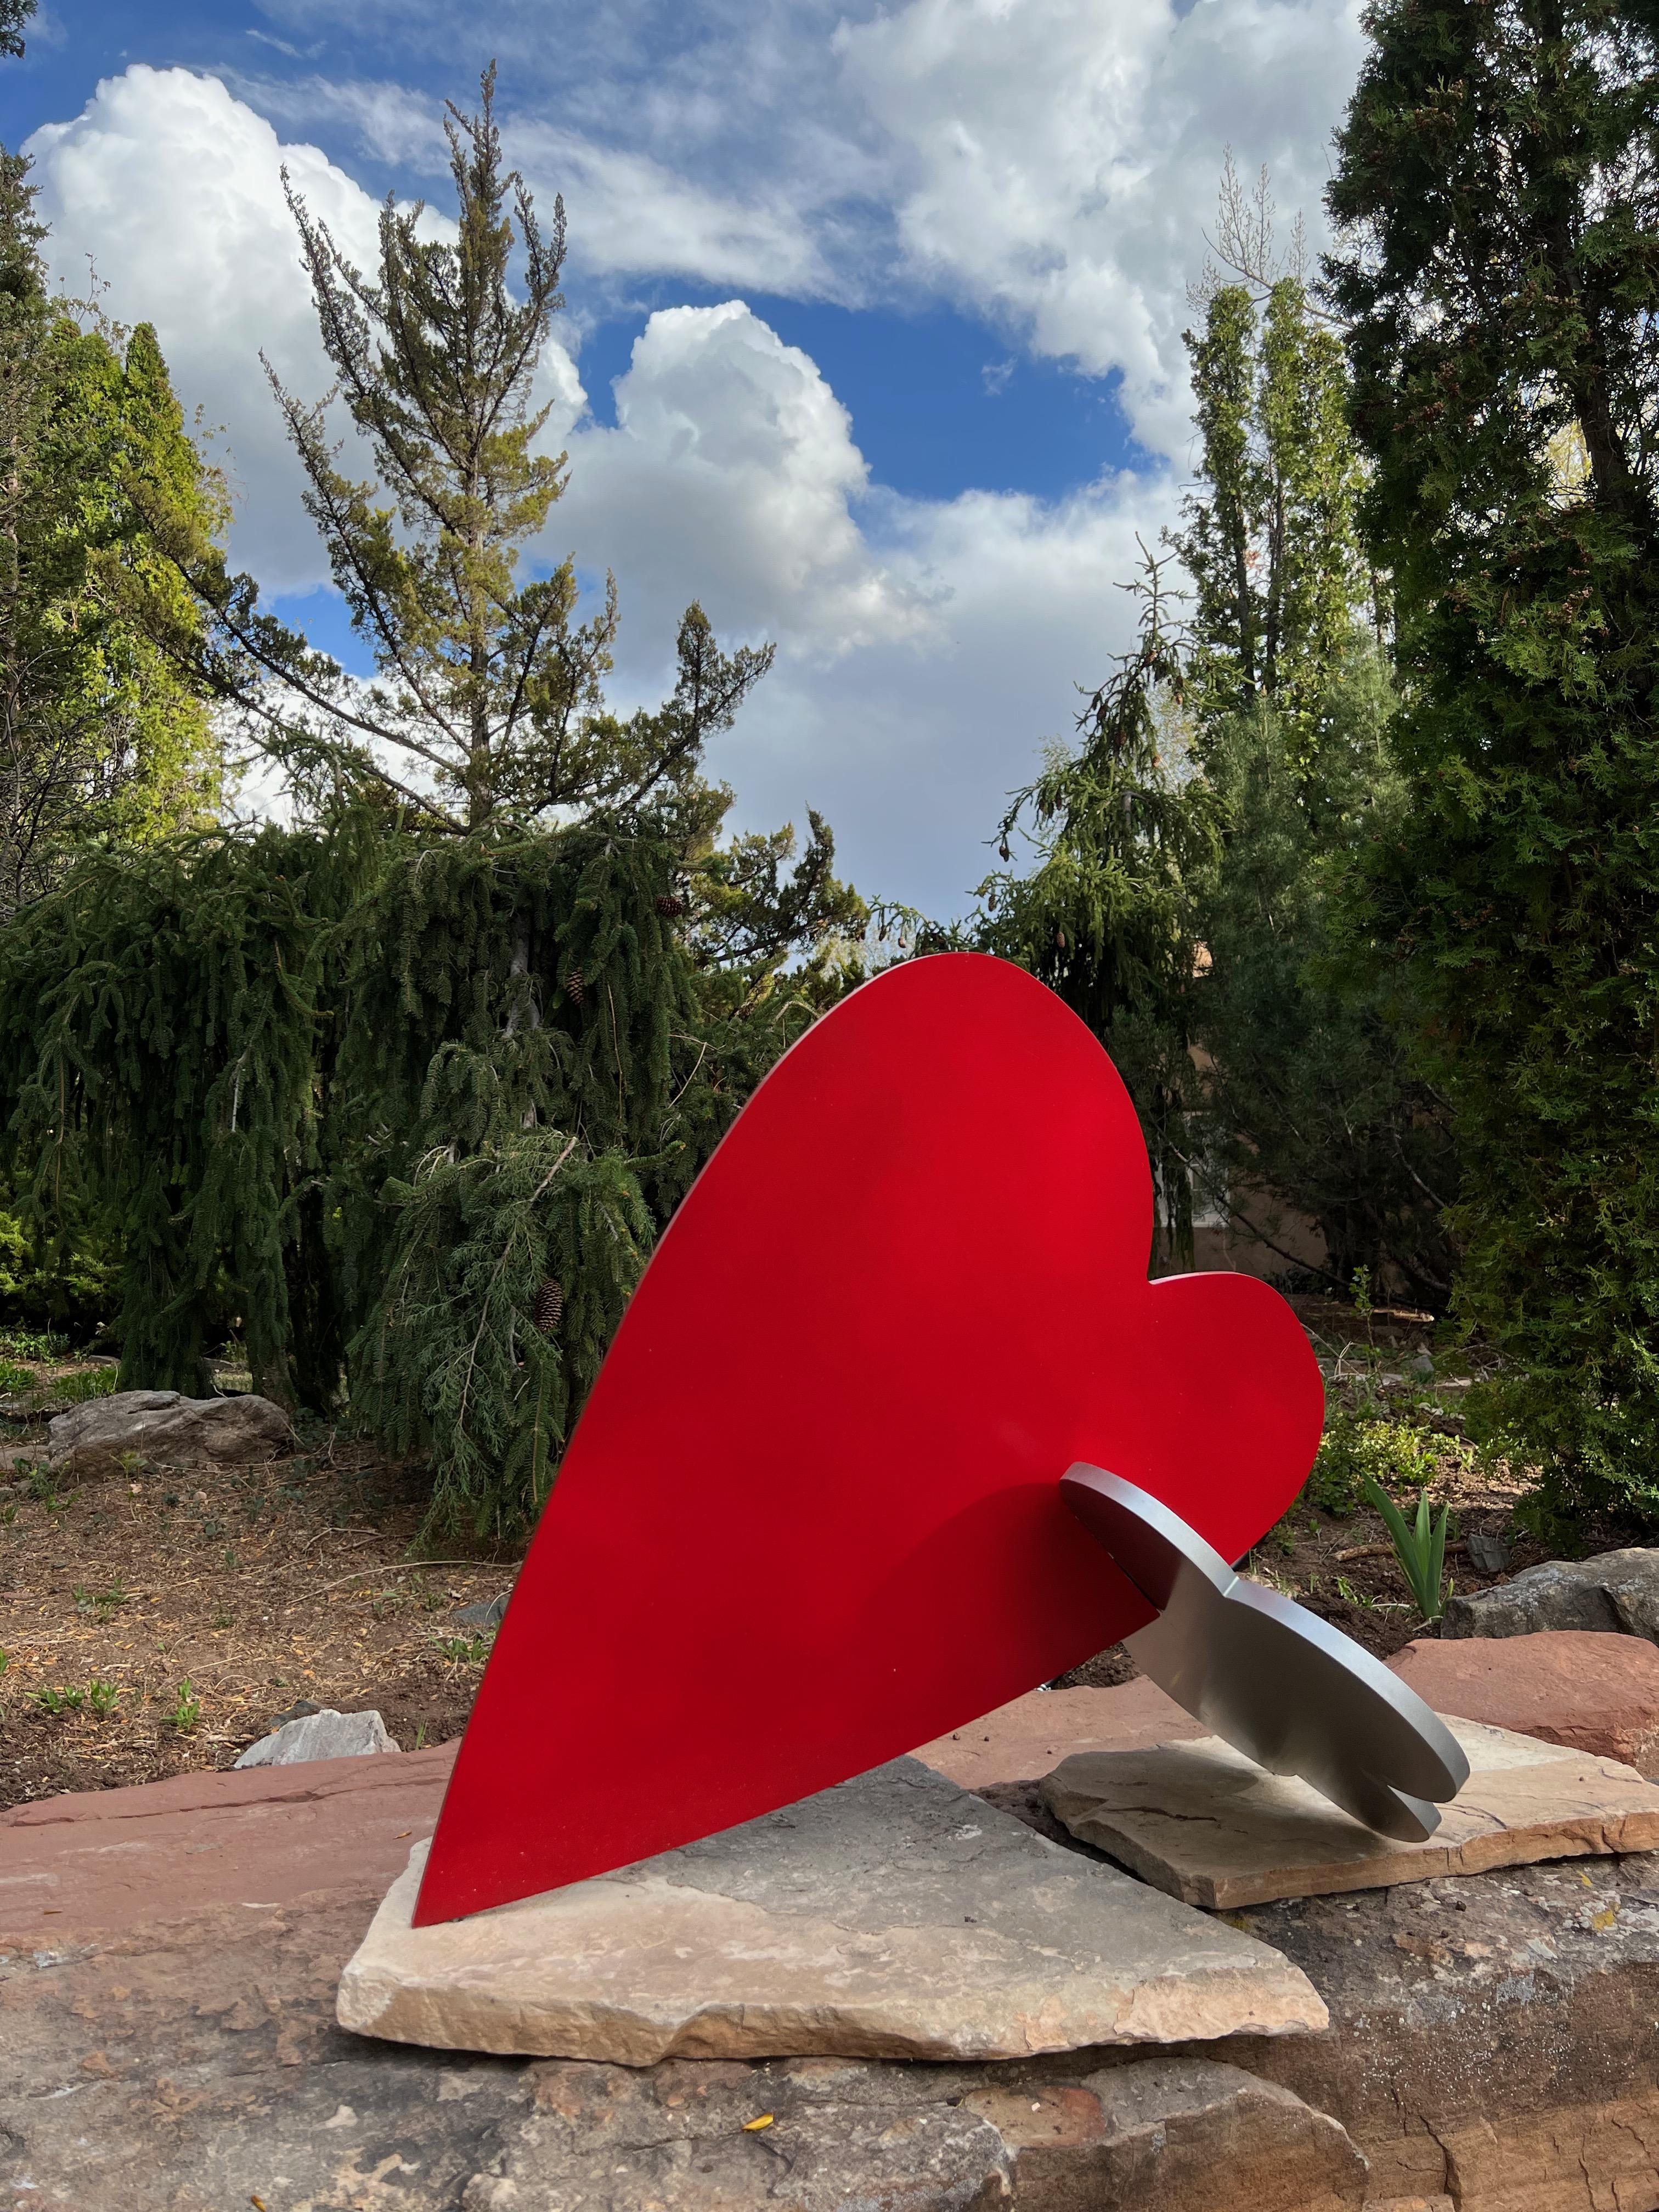 Heart + Cloud, sculpture de Kerry Green, contemporain,indoor, outdoor, red, silver
édition limitée 18, aluminium fabriqué
Sculpture à emboîtement pour affichage intérieur.

Contactez-nous pour obtenir des informations sur les délais de livraison